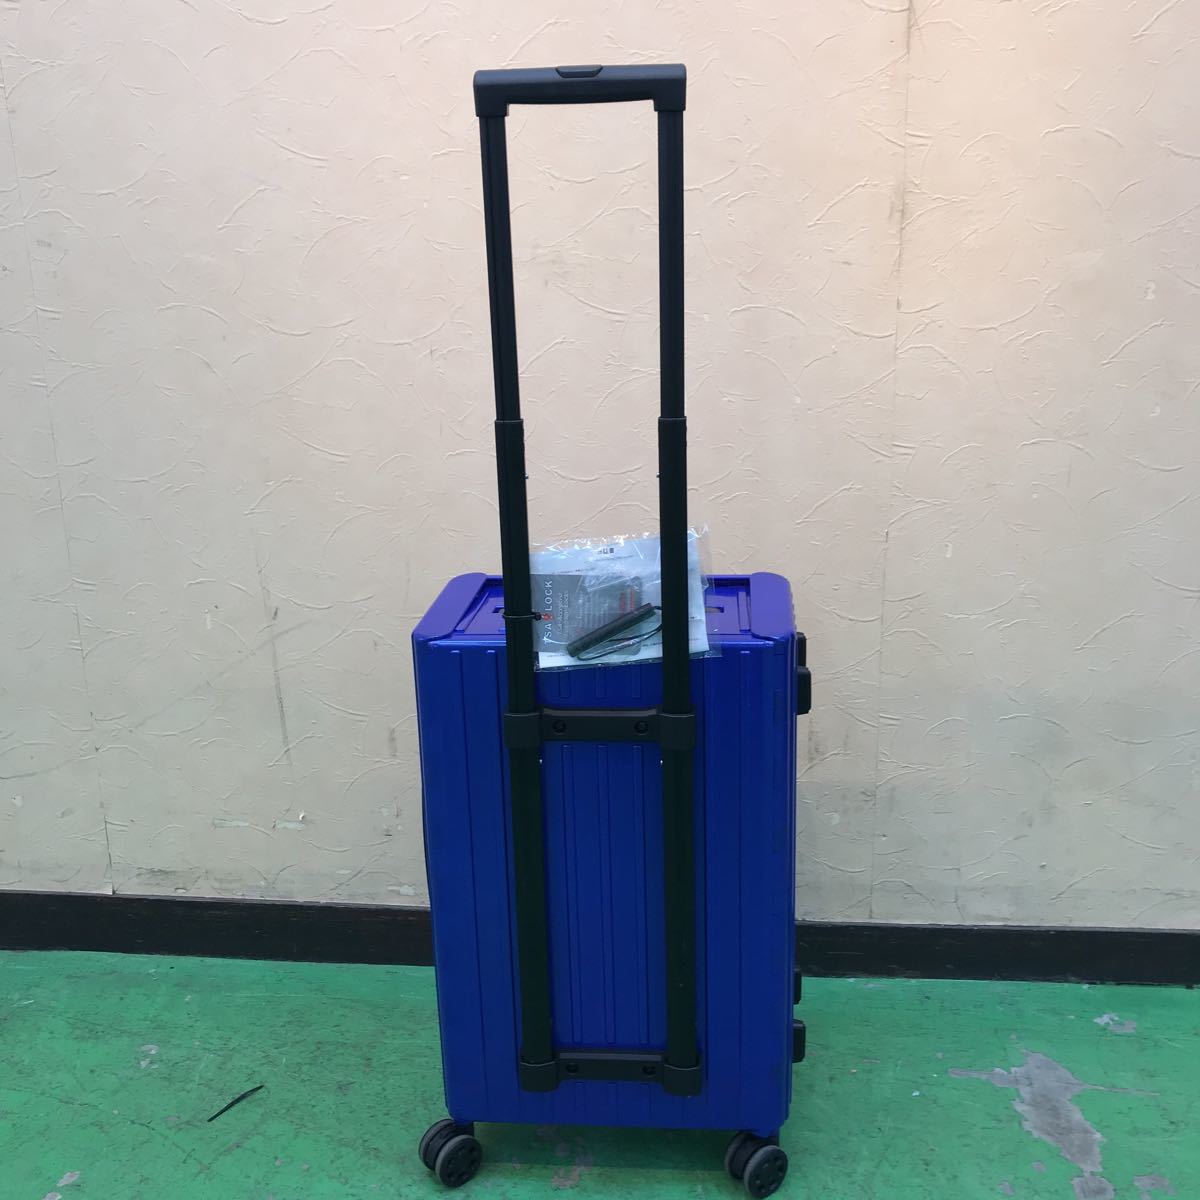  голубой складной Carry кейс дорожная сумка машина внутри принесенный возможно текущее состояние товар 